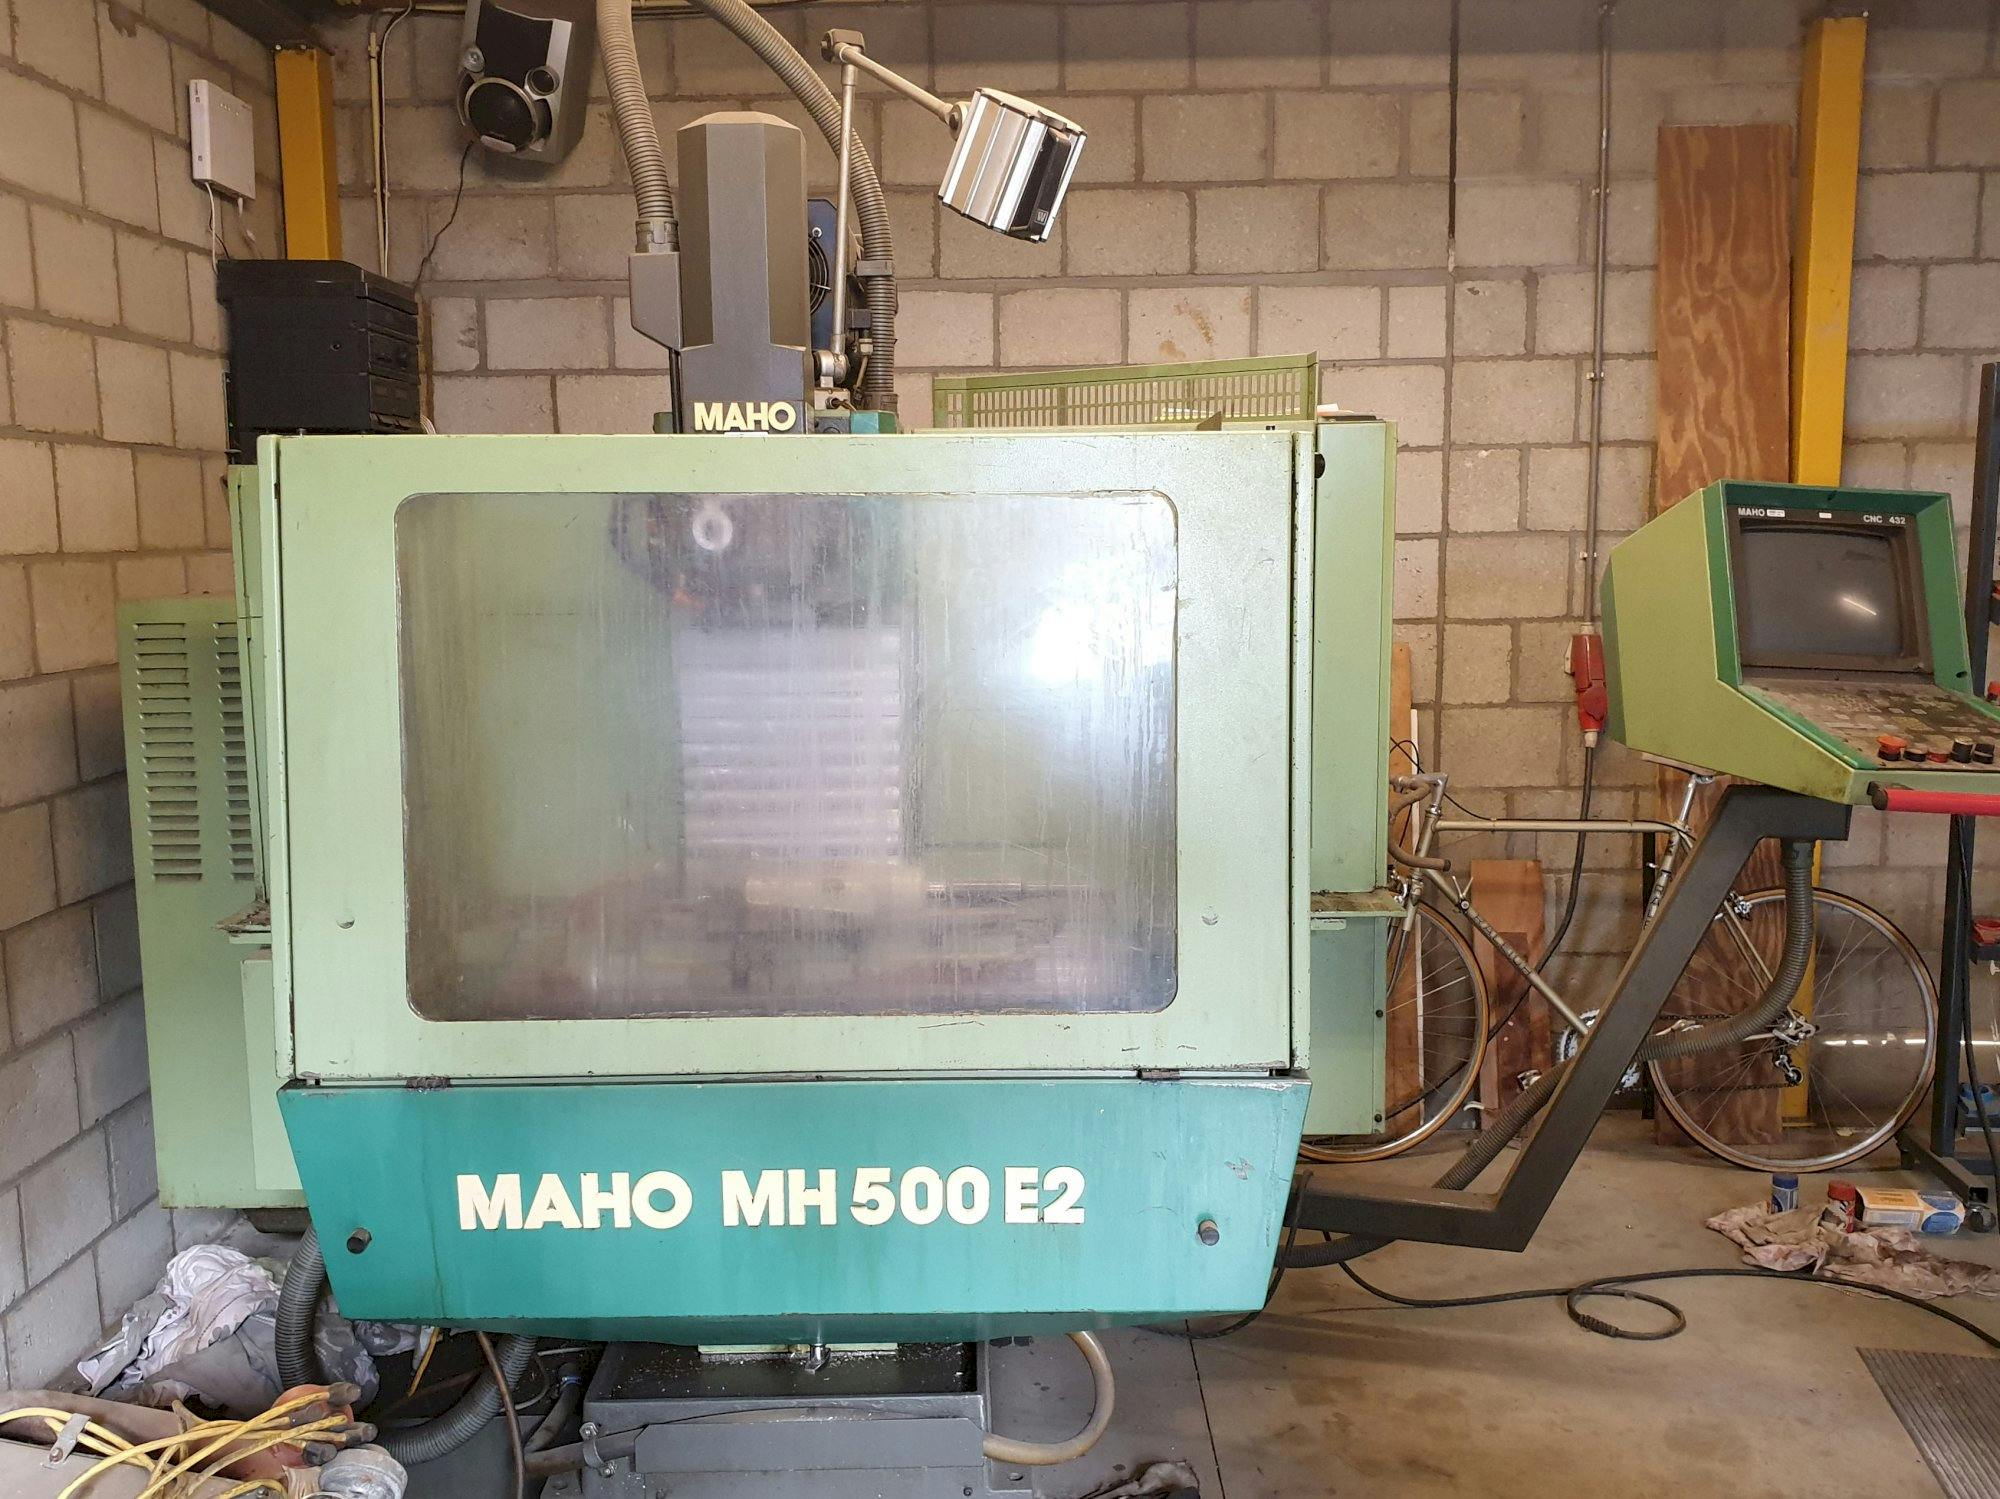 Vista lateral izquierda de la máquina Maho MH 500